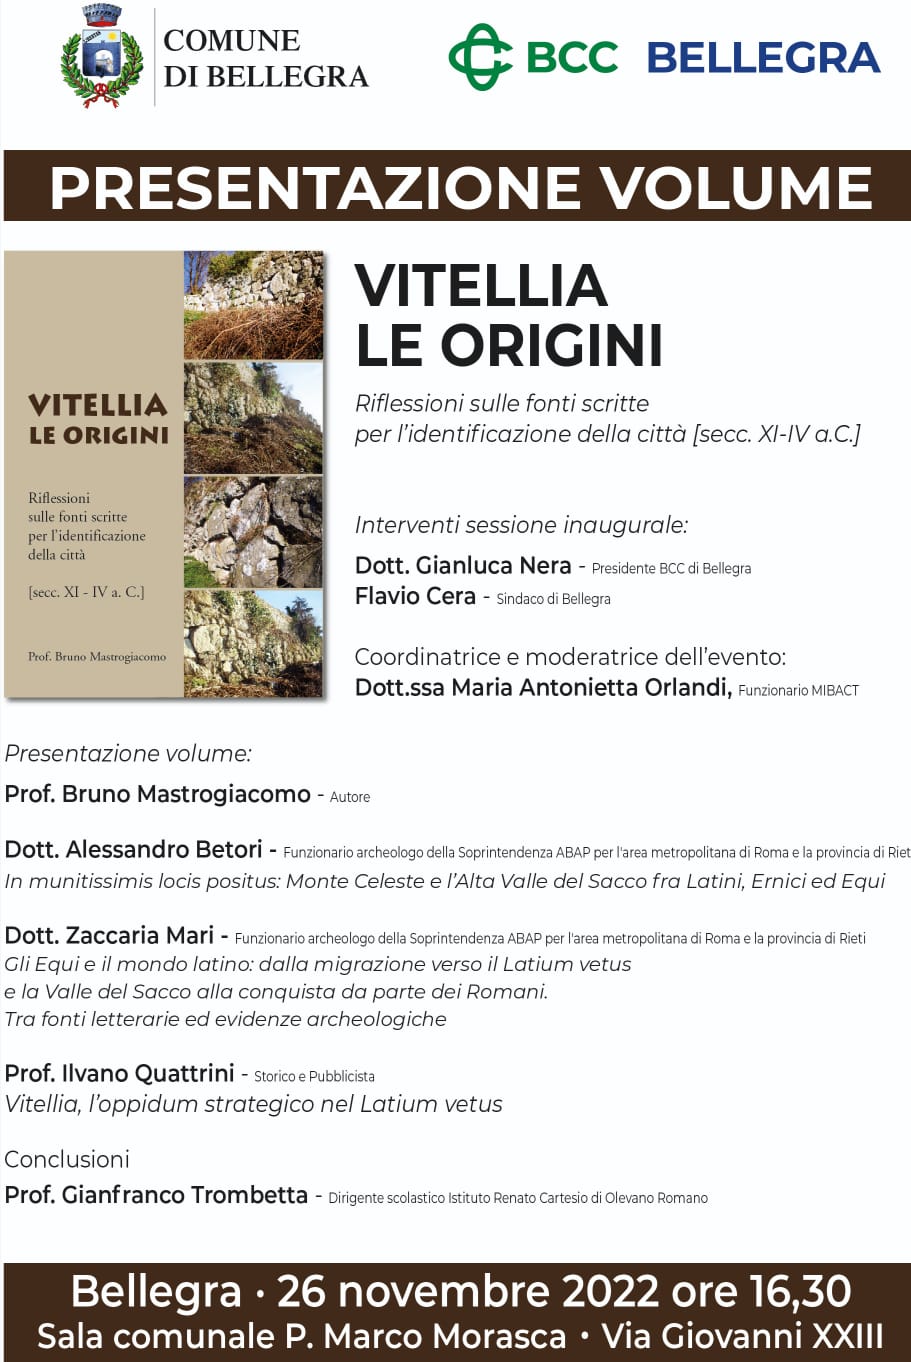 https://www.lacicala.org/immagini_news/15-11-2022/vitellia--le-origini-presentazione-volume-del-prof-bruno-mastrogiacomo--bellegra-26-novembre-2022-.jpg